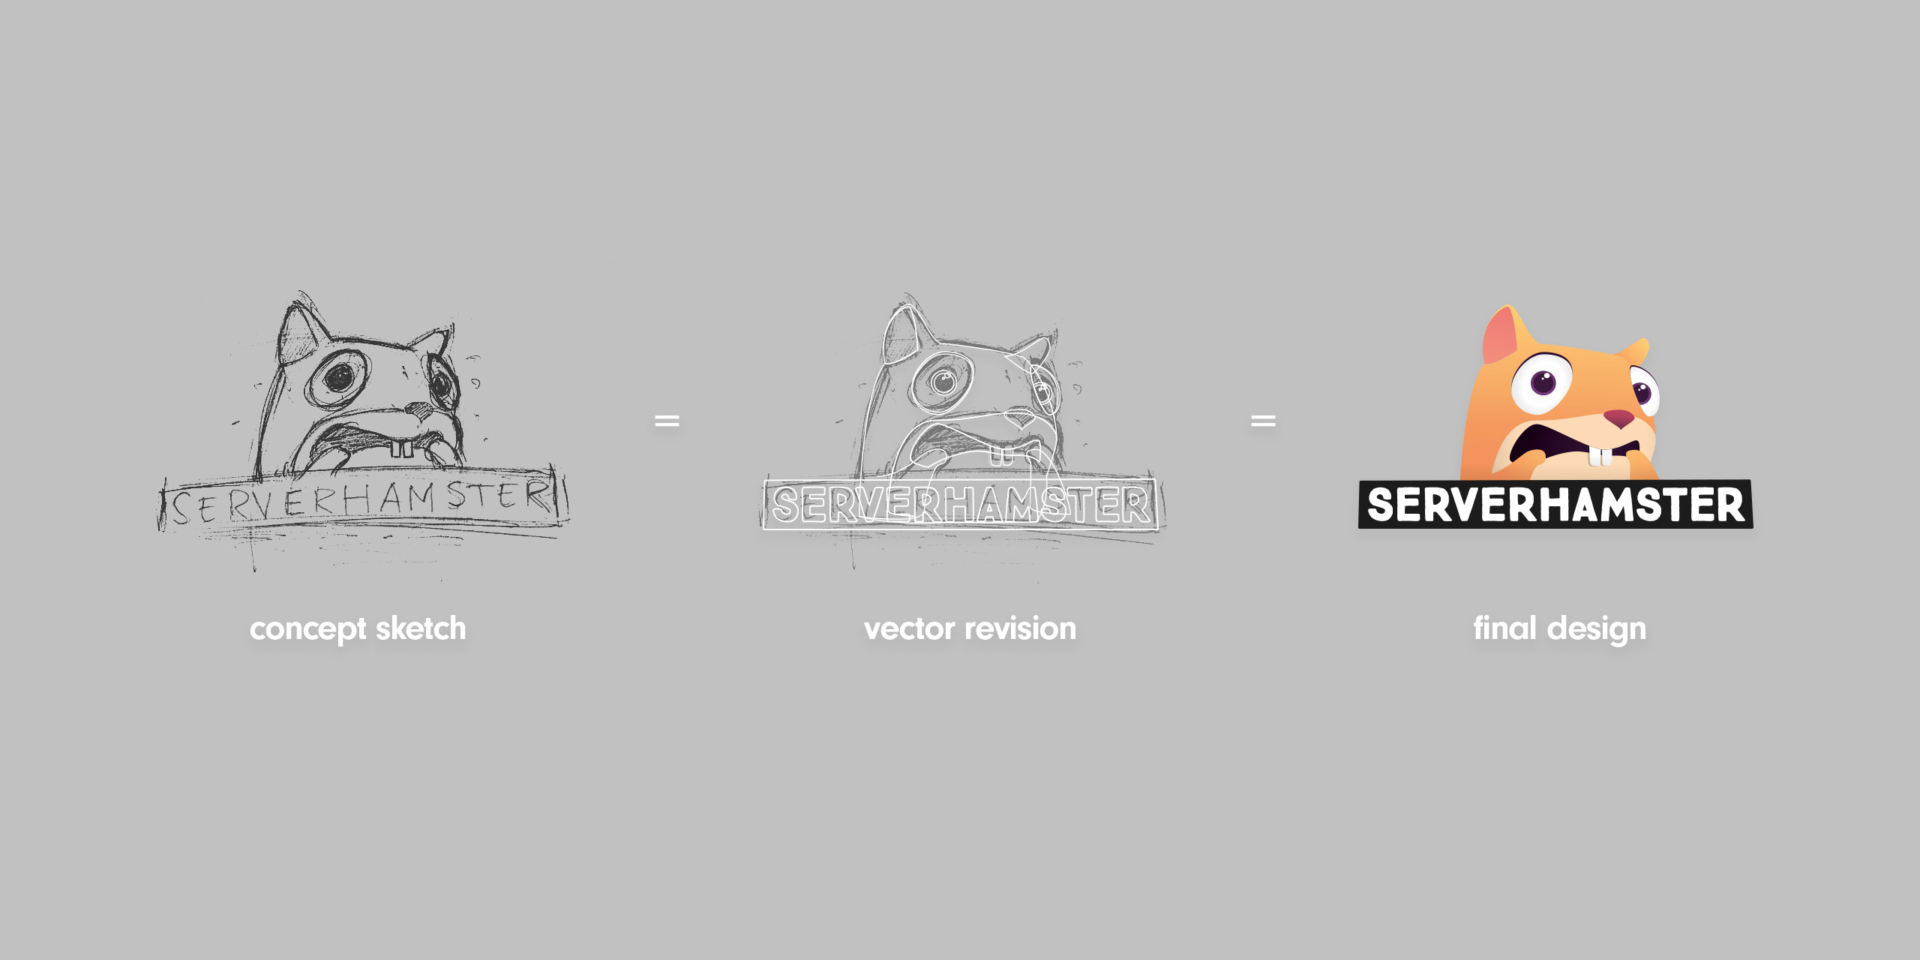 serverhamster logo design steps anenglishman